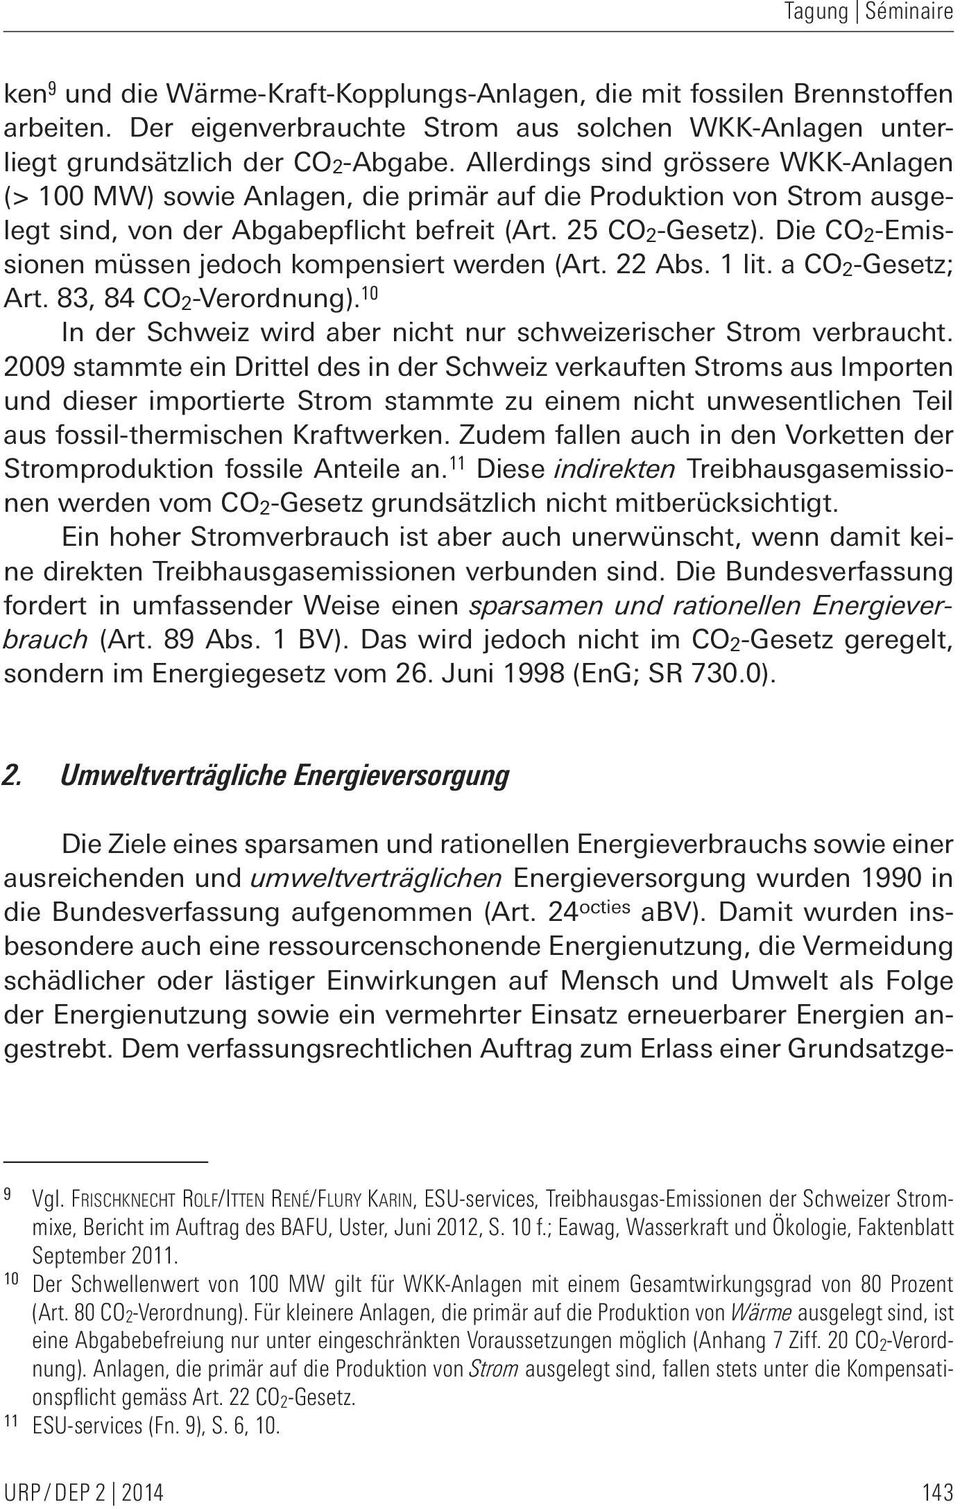 Die CO 2-Emissionen müssen jedoch kompensiert werden (Art. 22 Abs. 1 lit. a CO 2-Gesetz; Art. 83, 84 CO 2-Verordnung). 10 In der Schweiz wird aber nicht nur schweizerischer Strom verbraucht.